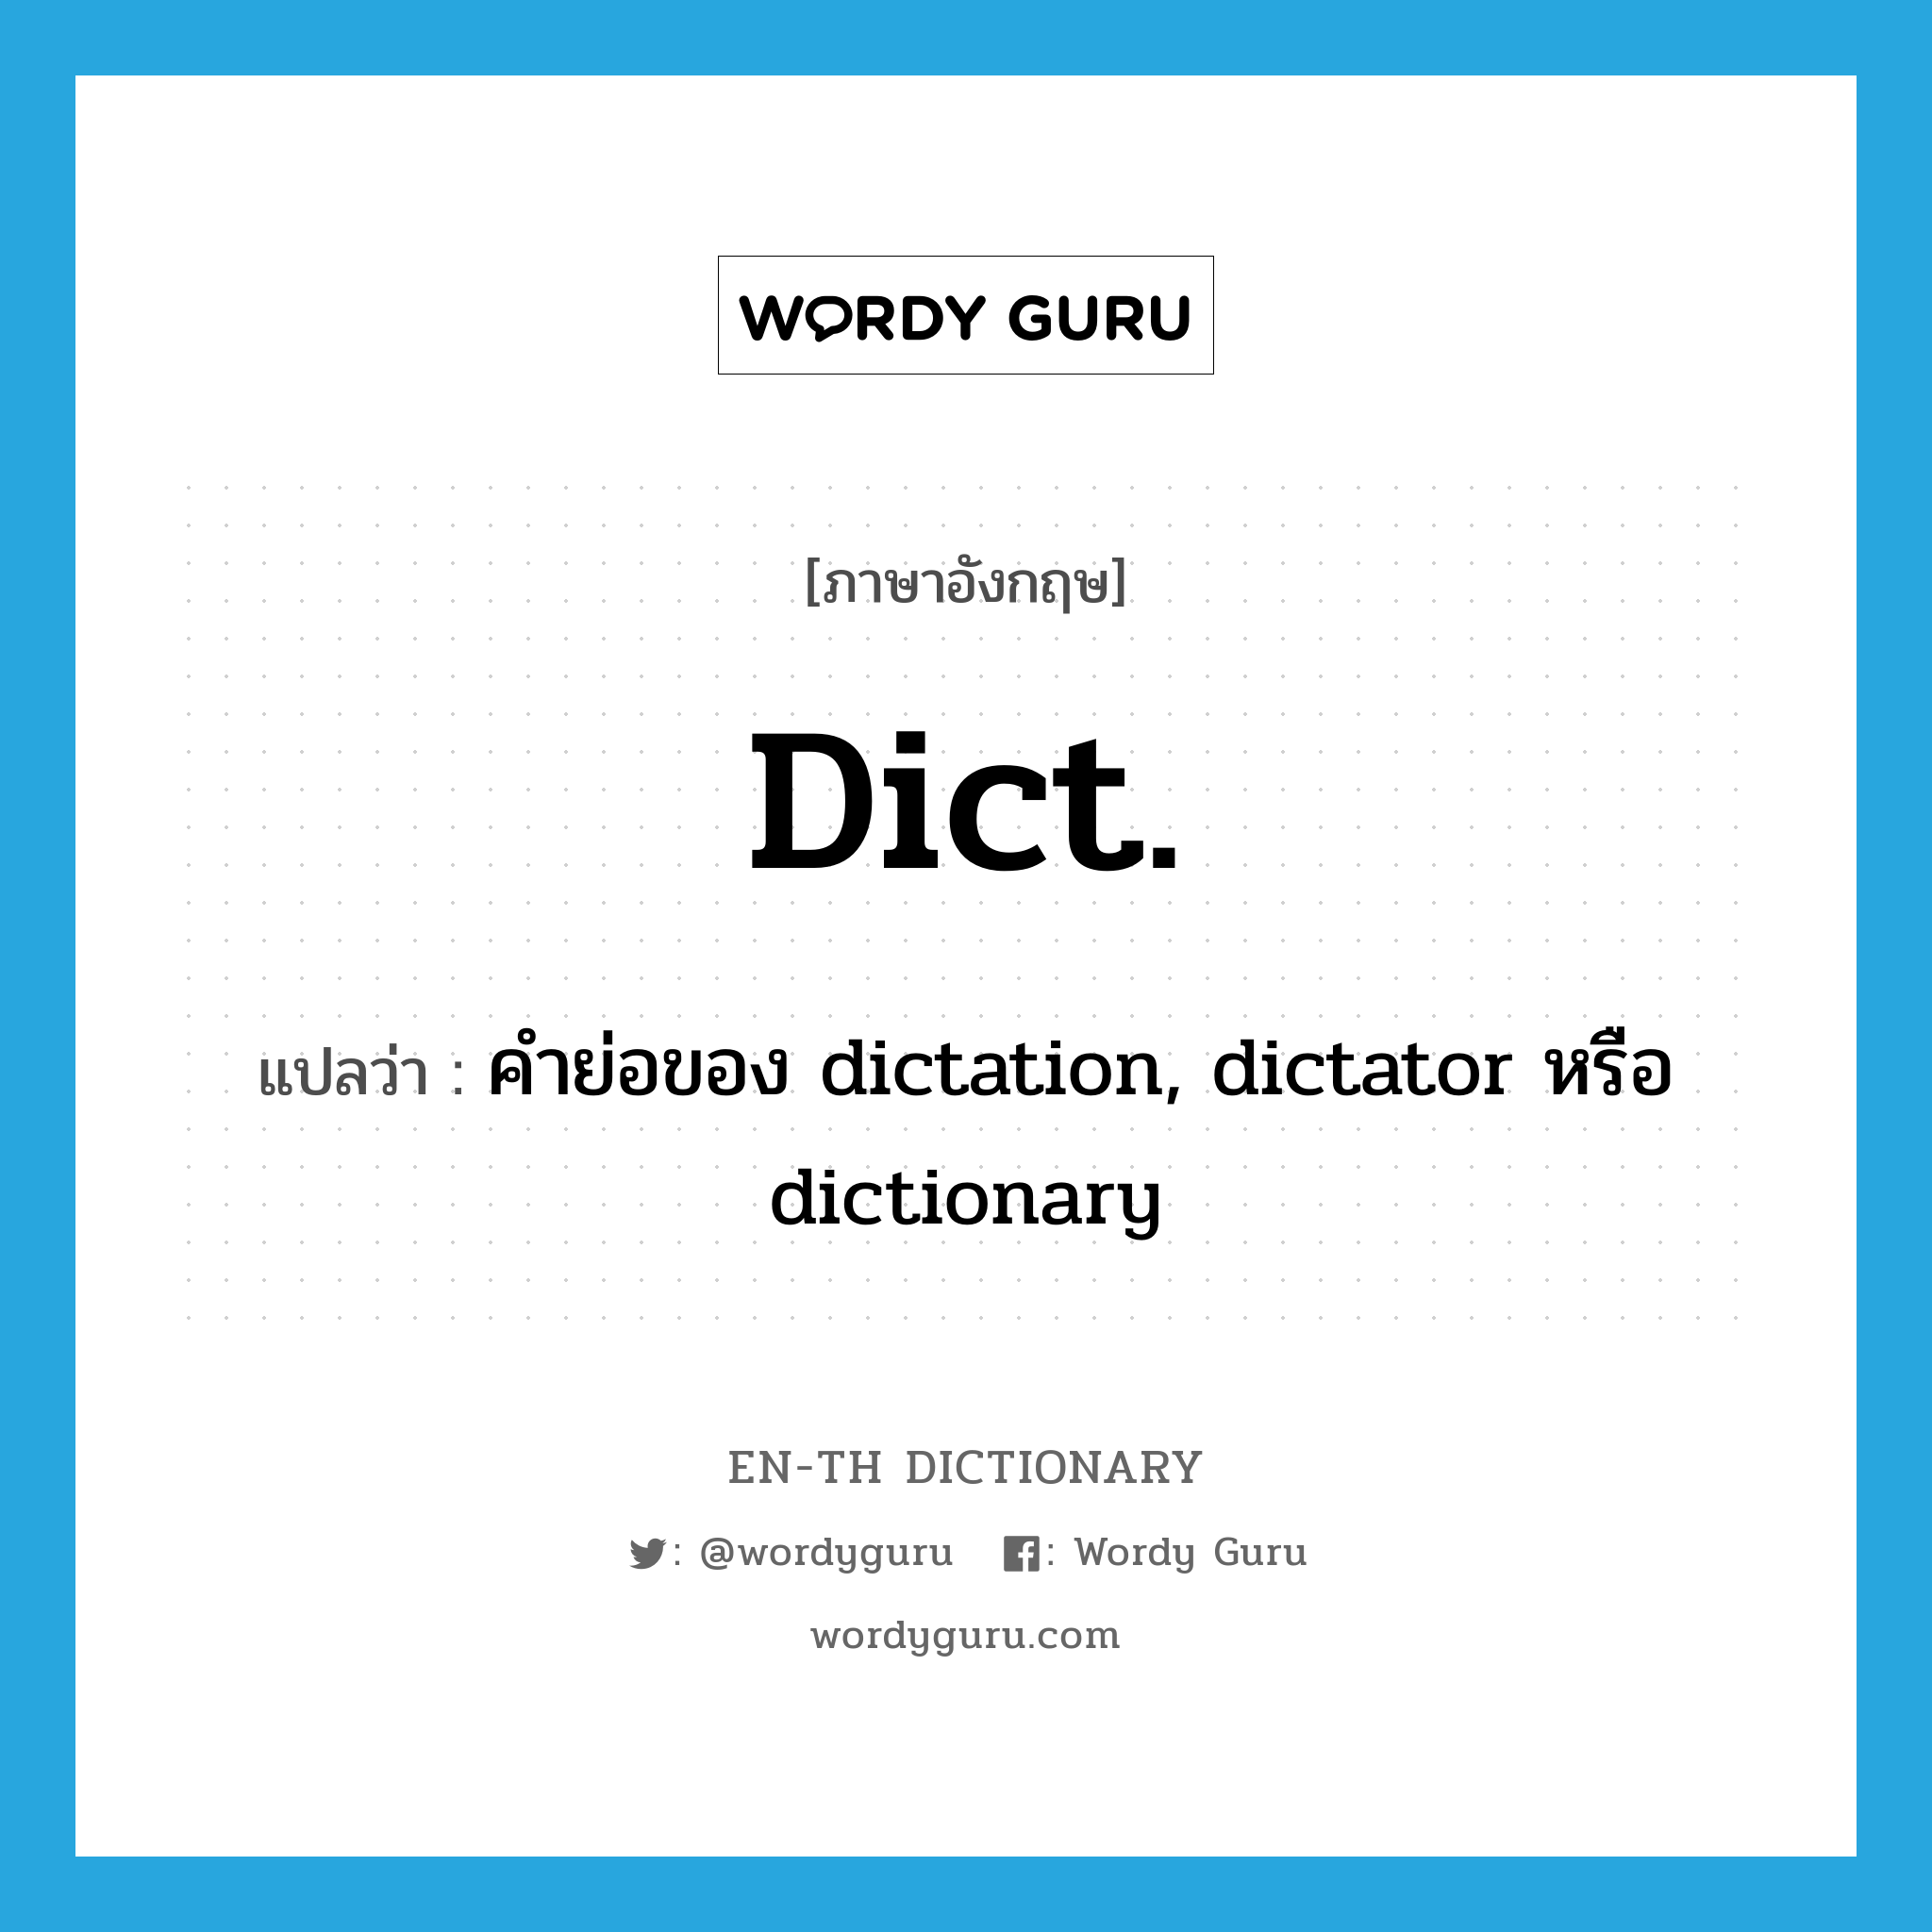 คำย่อของ dictation, dictator หรือ dictionary ภาษาอังกฤษ?, คำศัพท์ภาษาอังกฤษ คำย่อของ dictation, dictator หรือ dictionary แปลว่า dict. ประเภท ABBR หมวด ABBR